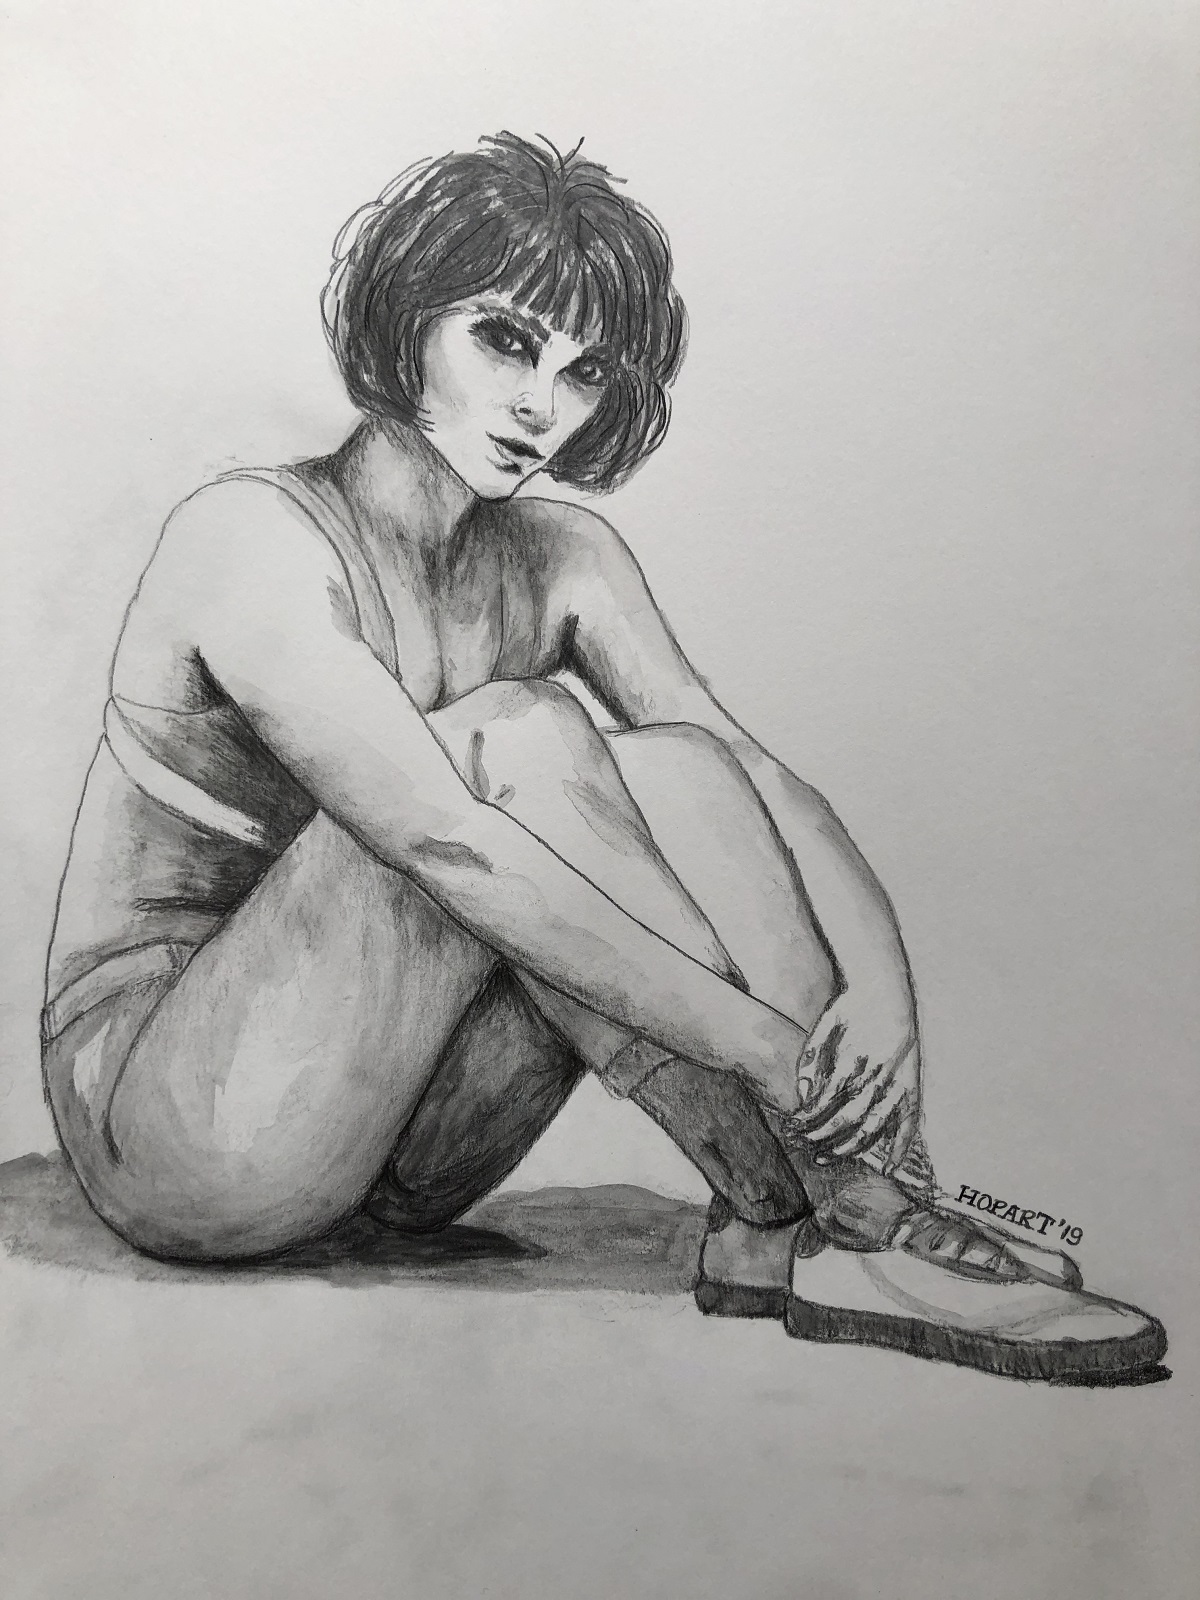 Sitting lady in pencil, 40 x 50 cm